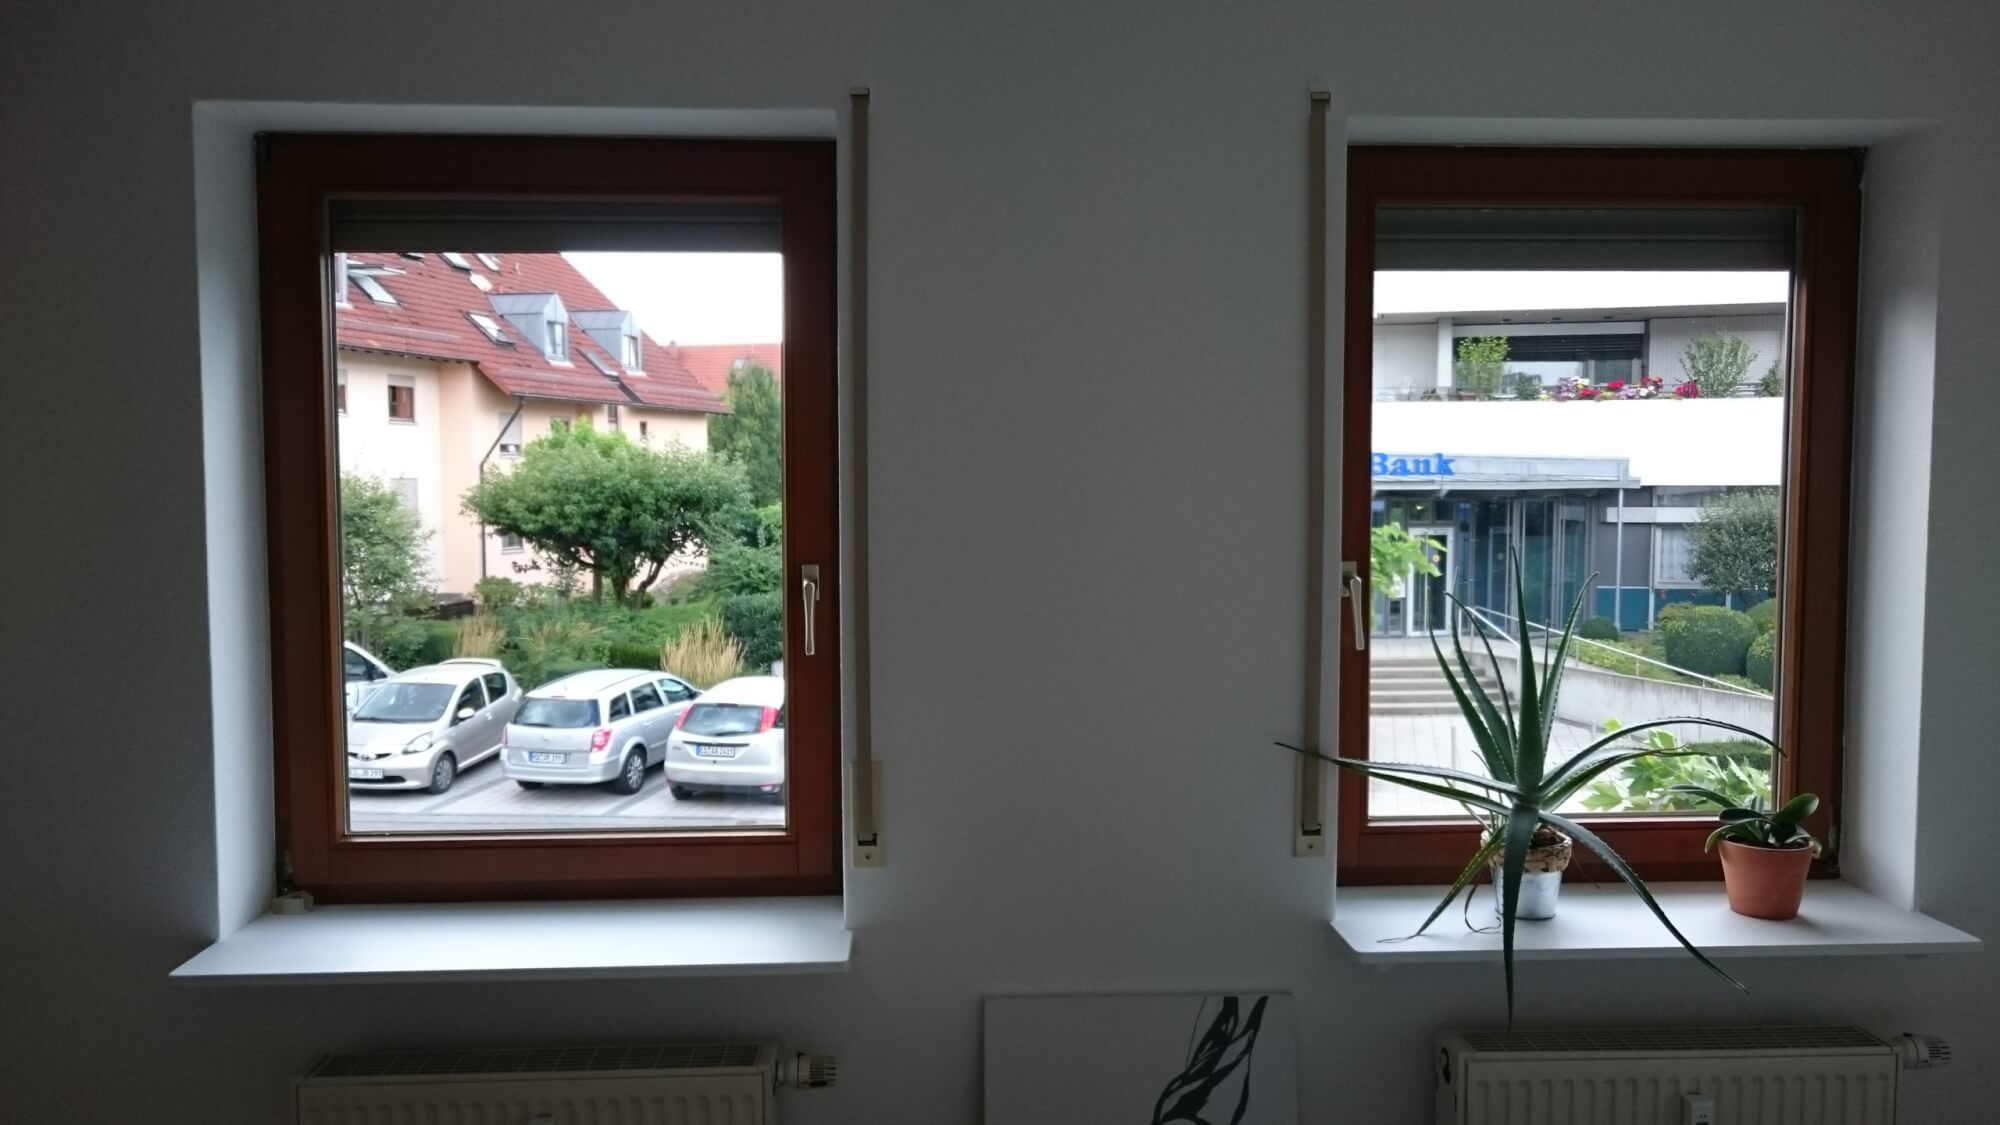 Fensterbank renovieren von grau in weiß mit Folie S115 beschichten nachher